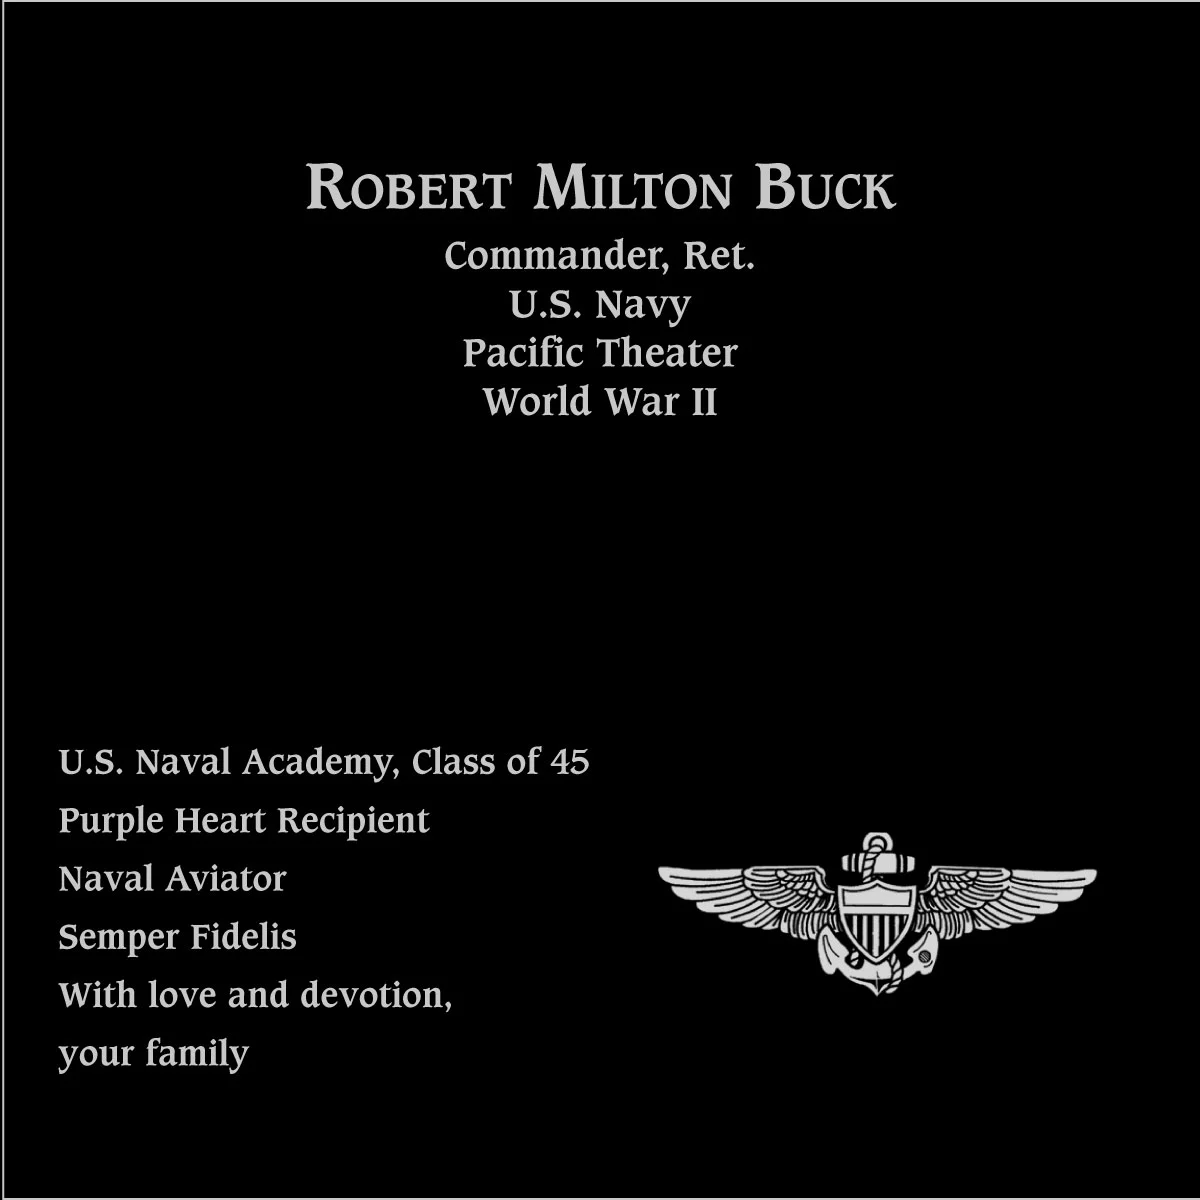 Robert Milton Buck